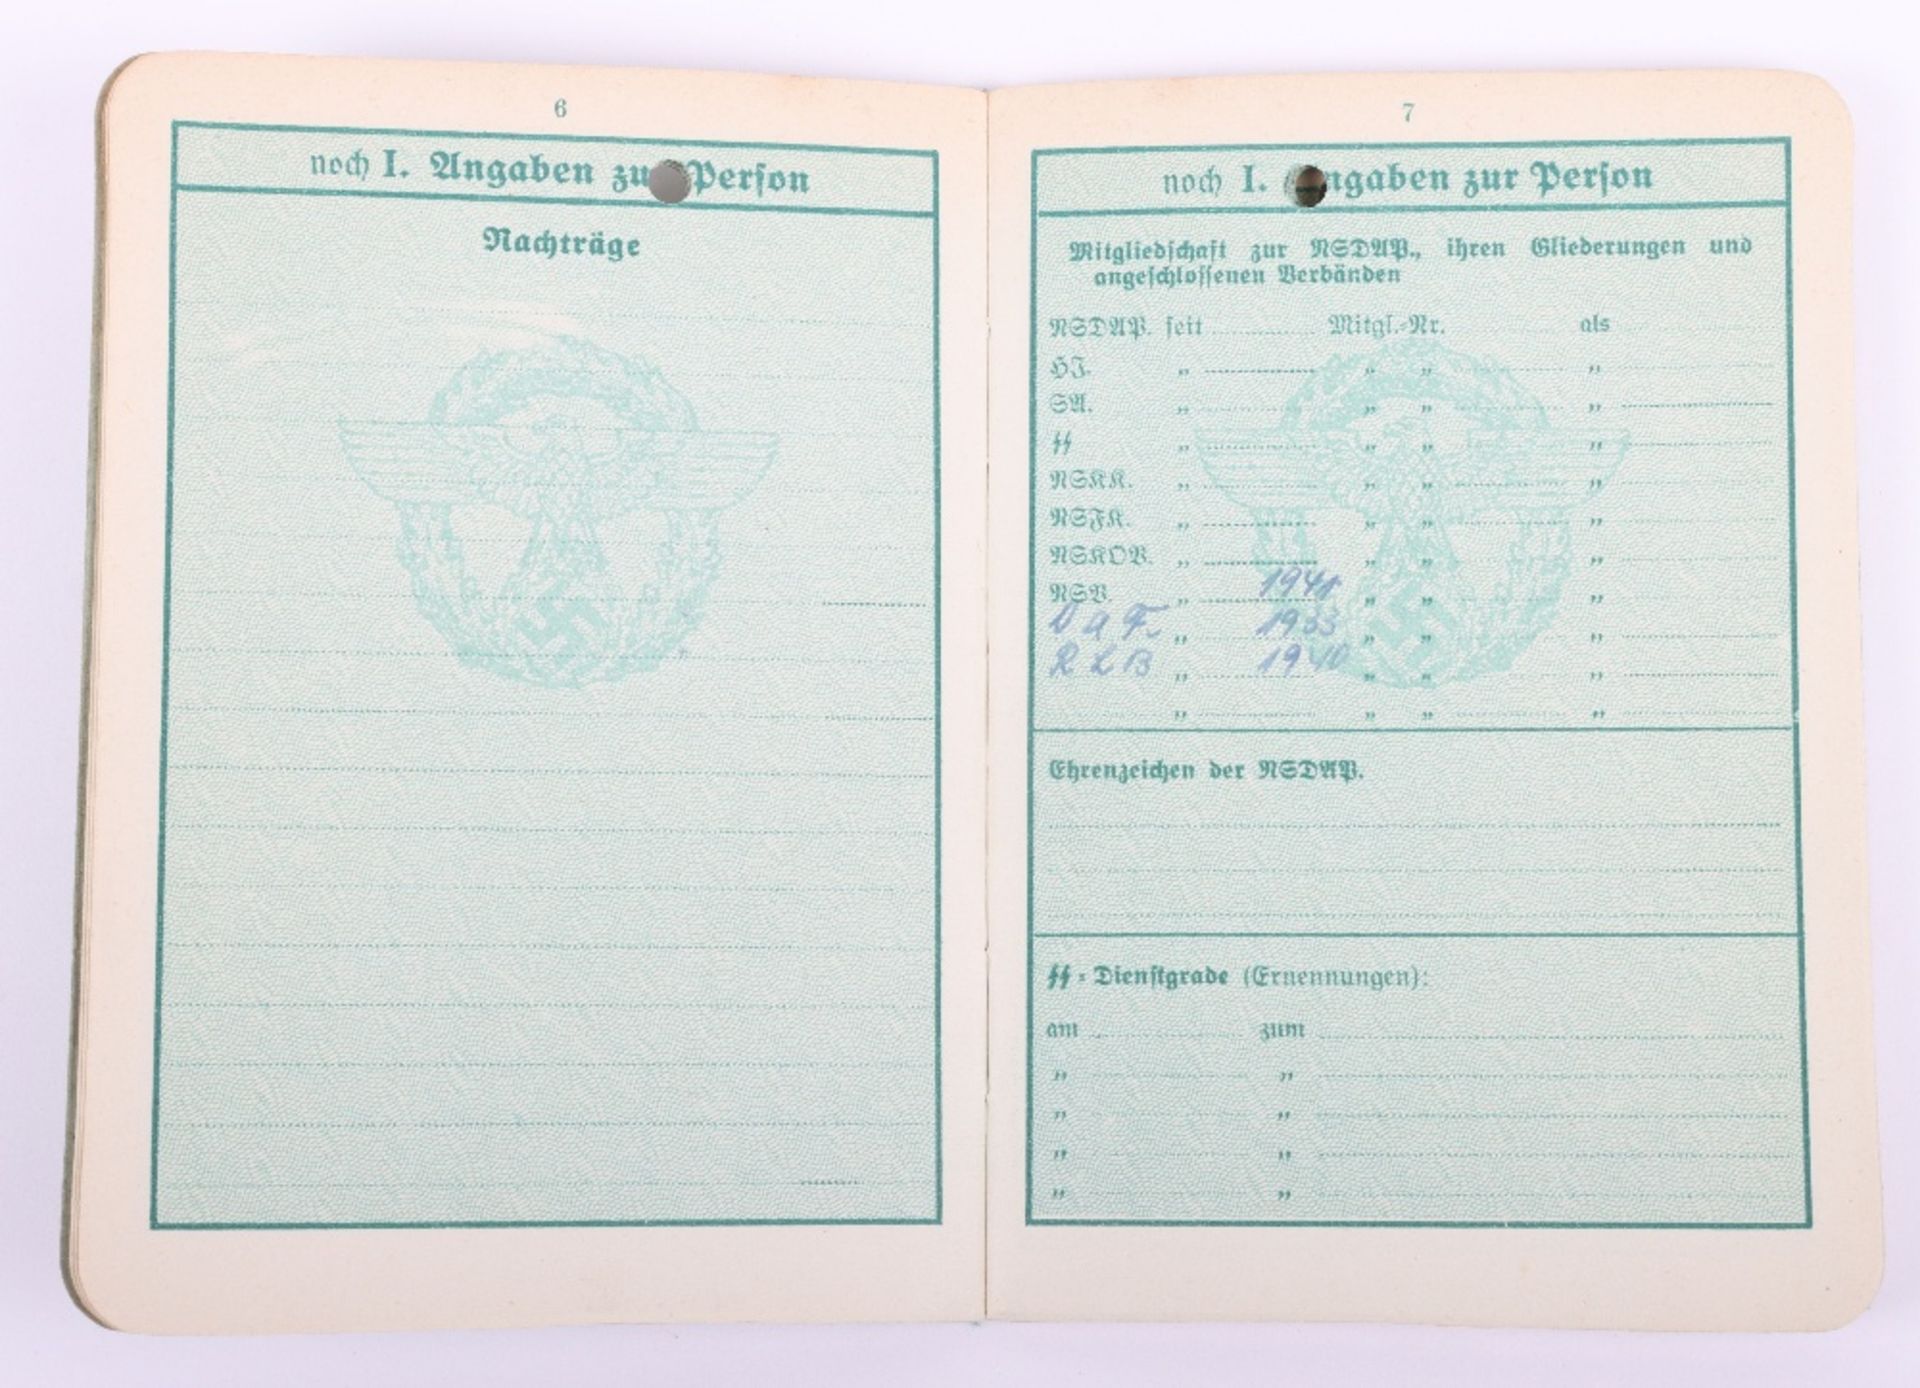 WW2 German Police service book / Polizei Dienstpass to W. Ilchmann. Polizei Reserve Hamburg 1943 - Image 6 of 11